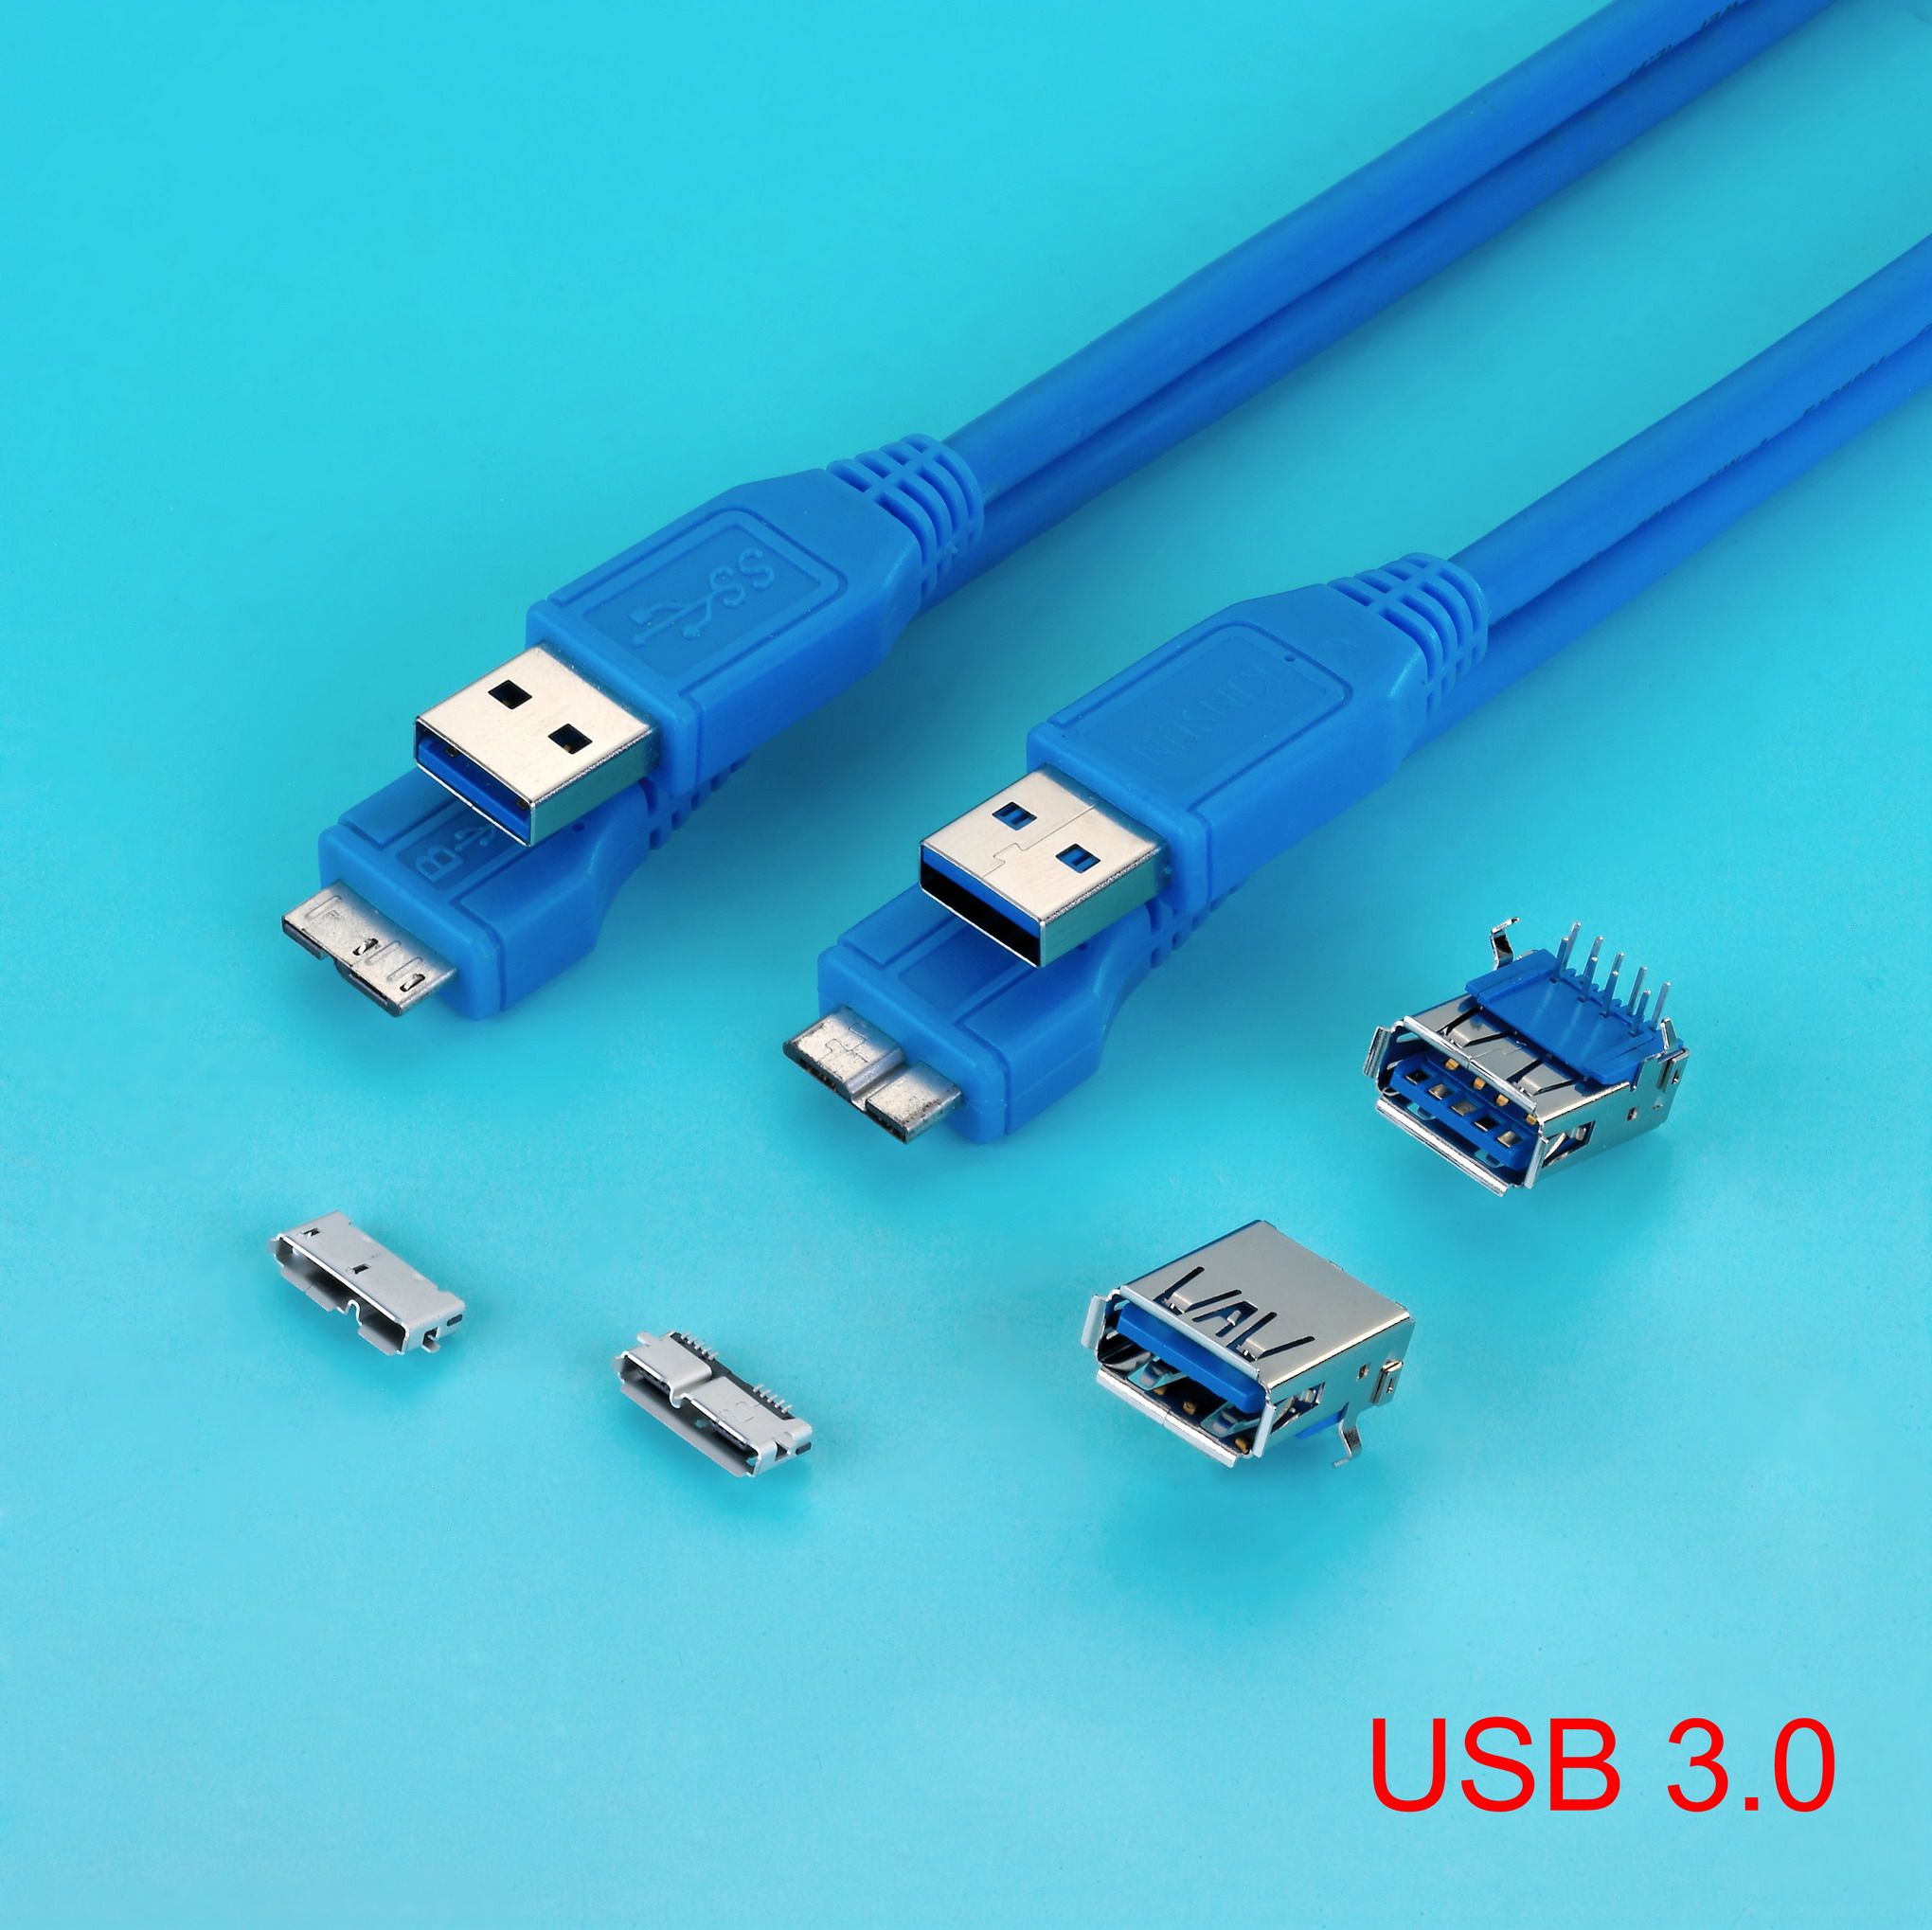 USB, Mini Fit, Pin Header, etc.